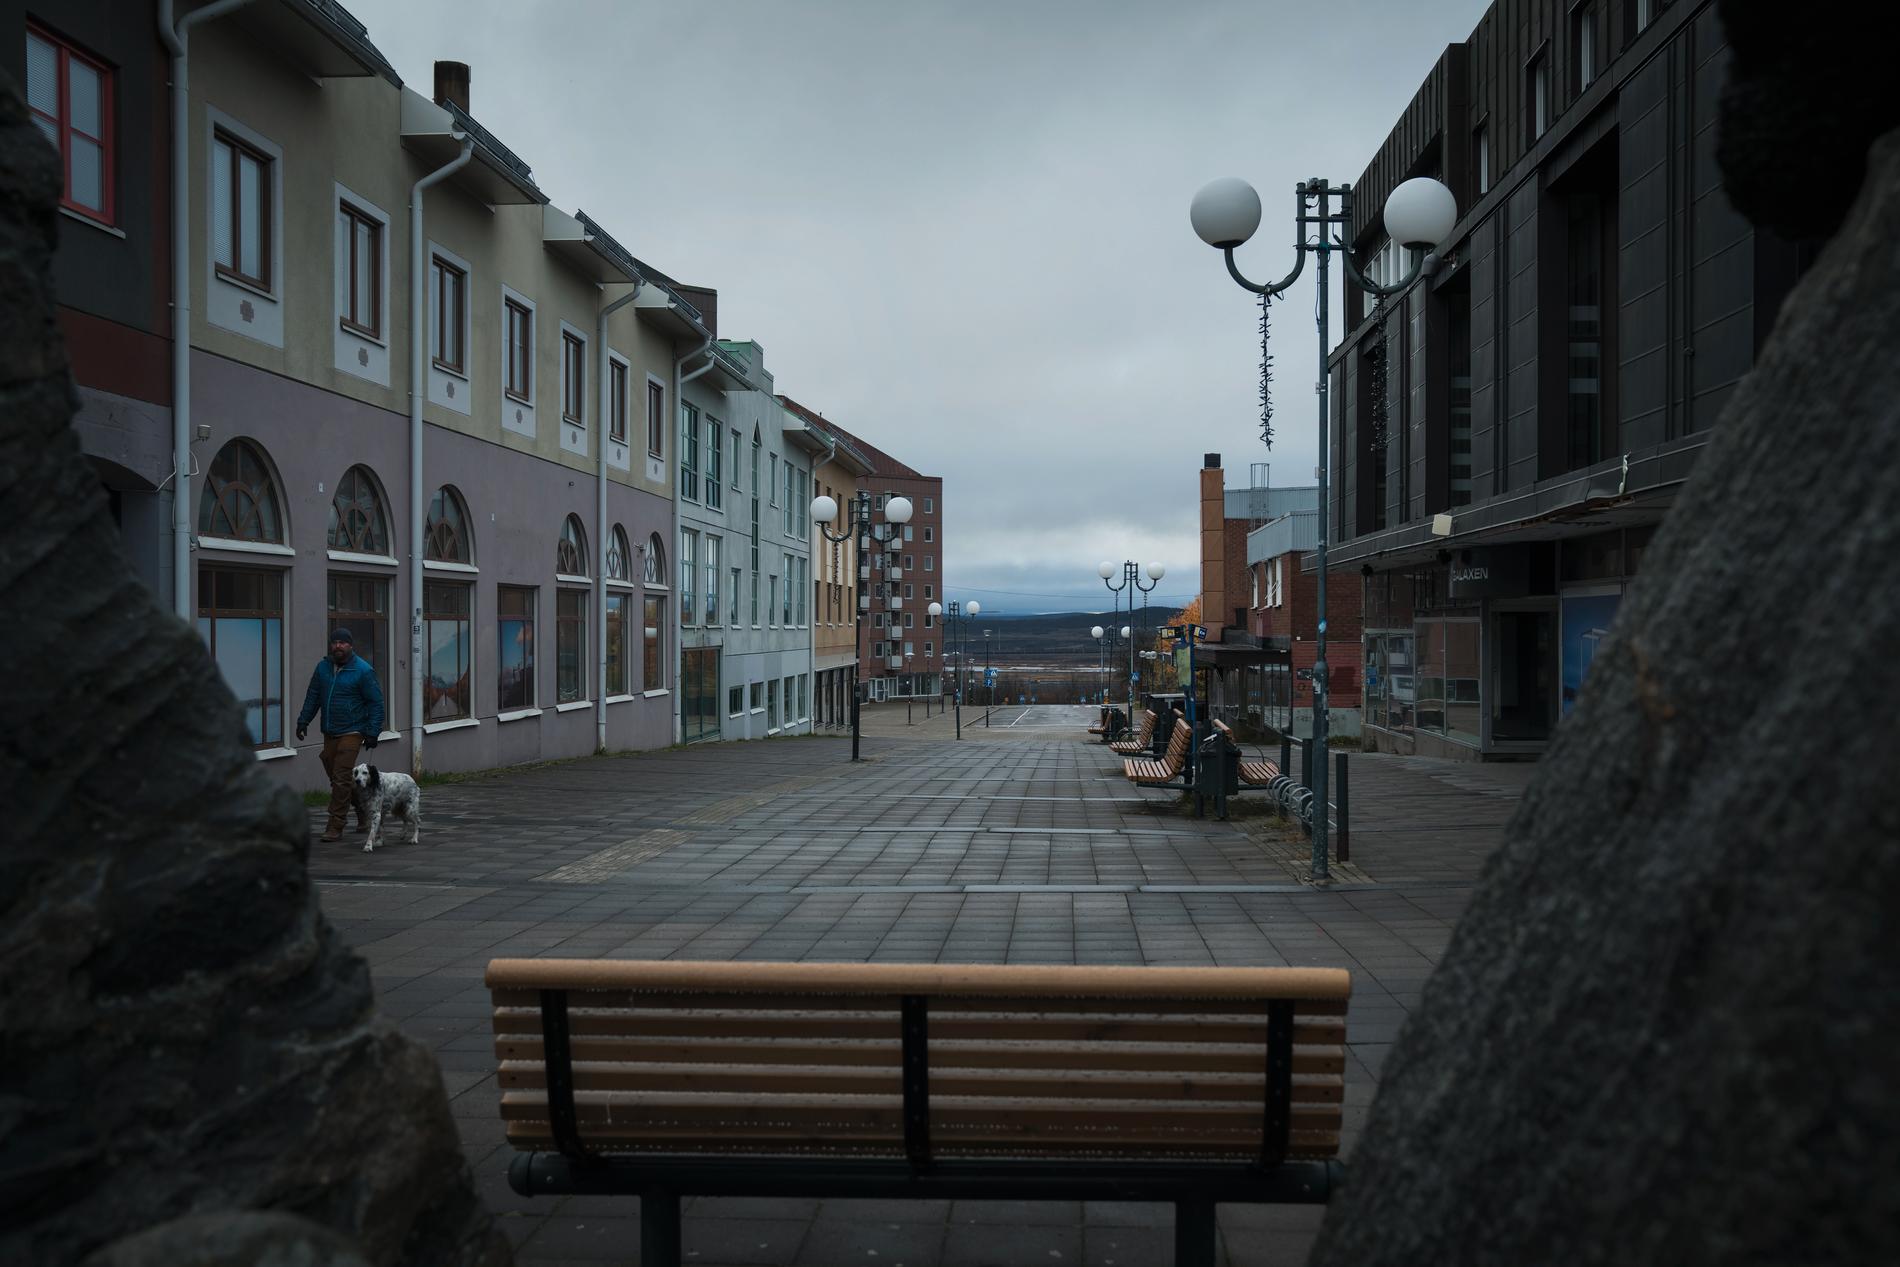 Gruvan äter sig sakta in under Kiruna. Gamla centrum börjar tömmas på människor och handel i takt med att den stora stadsomvandlingen går framåt. 